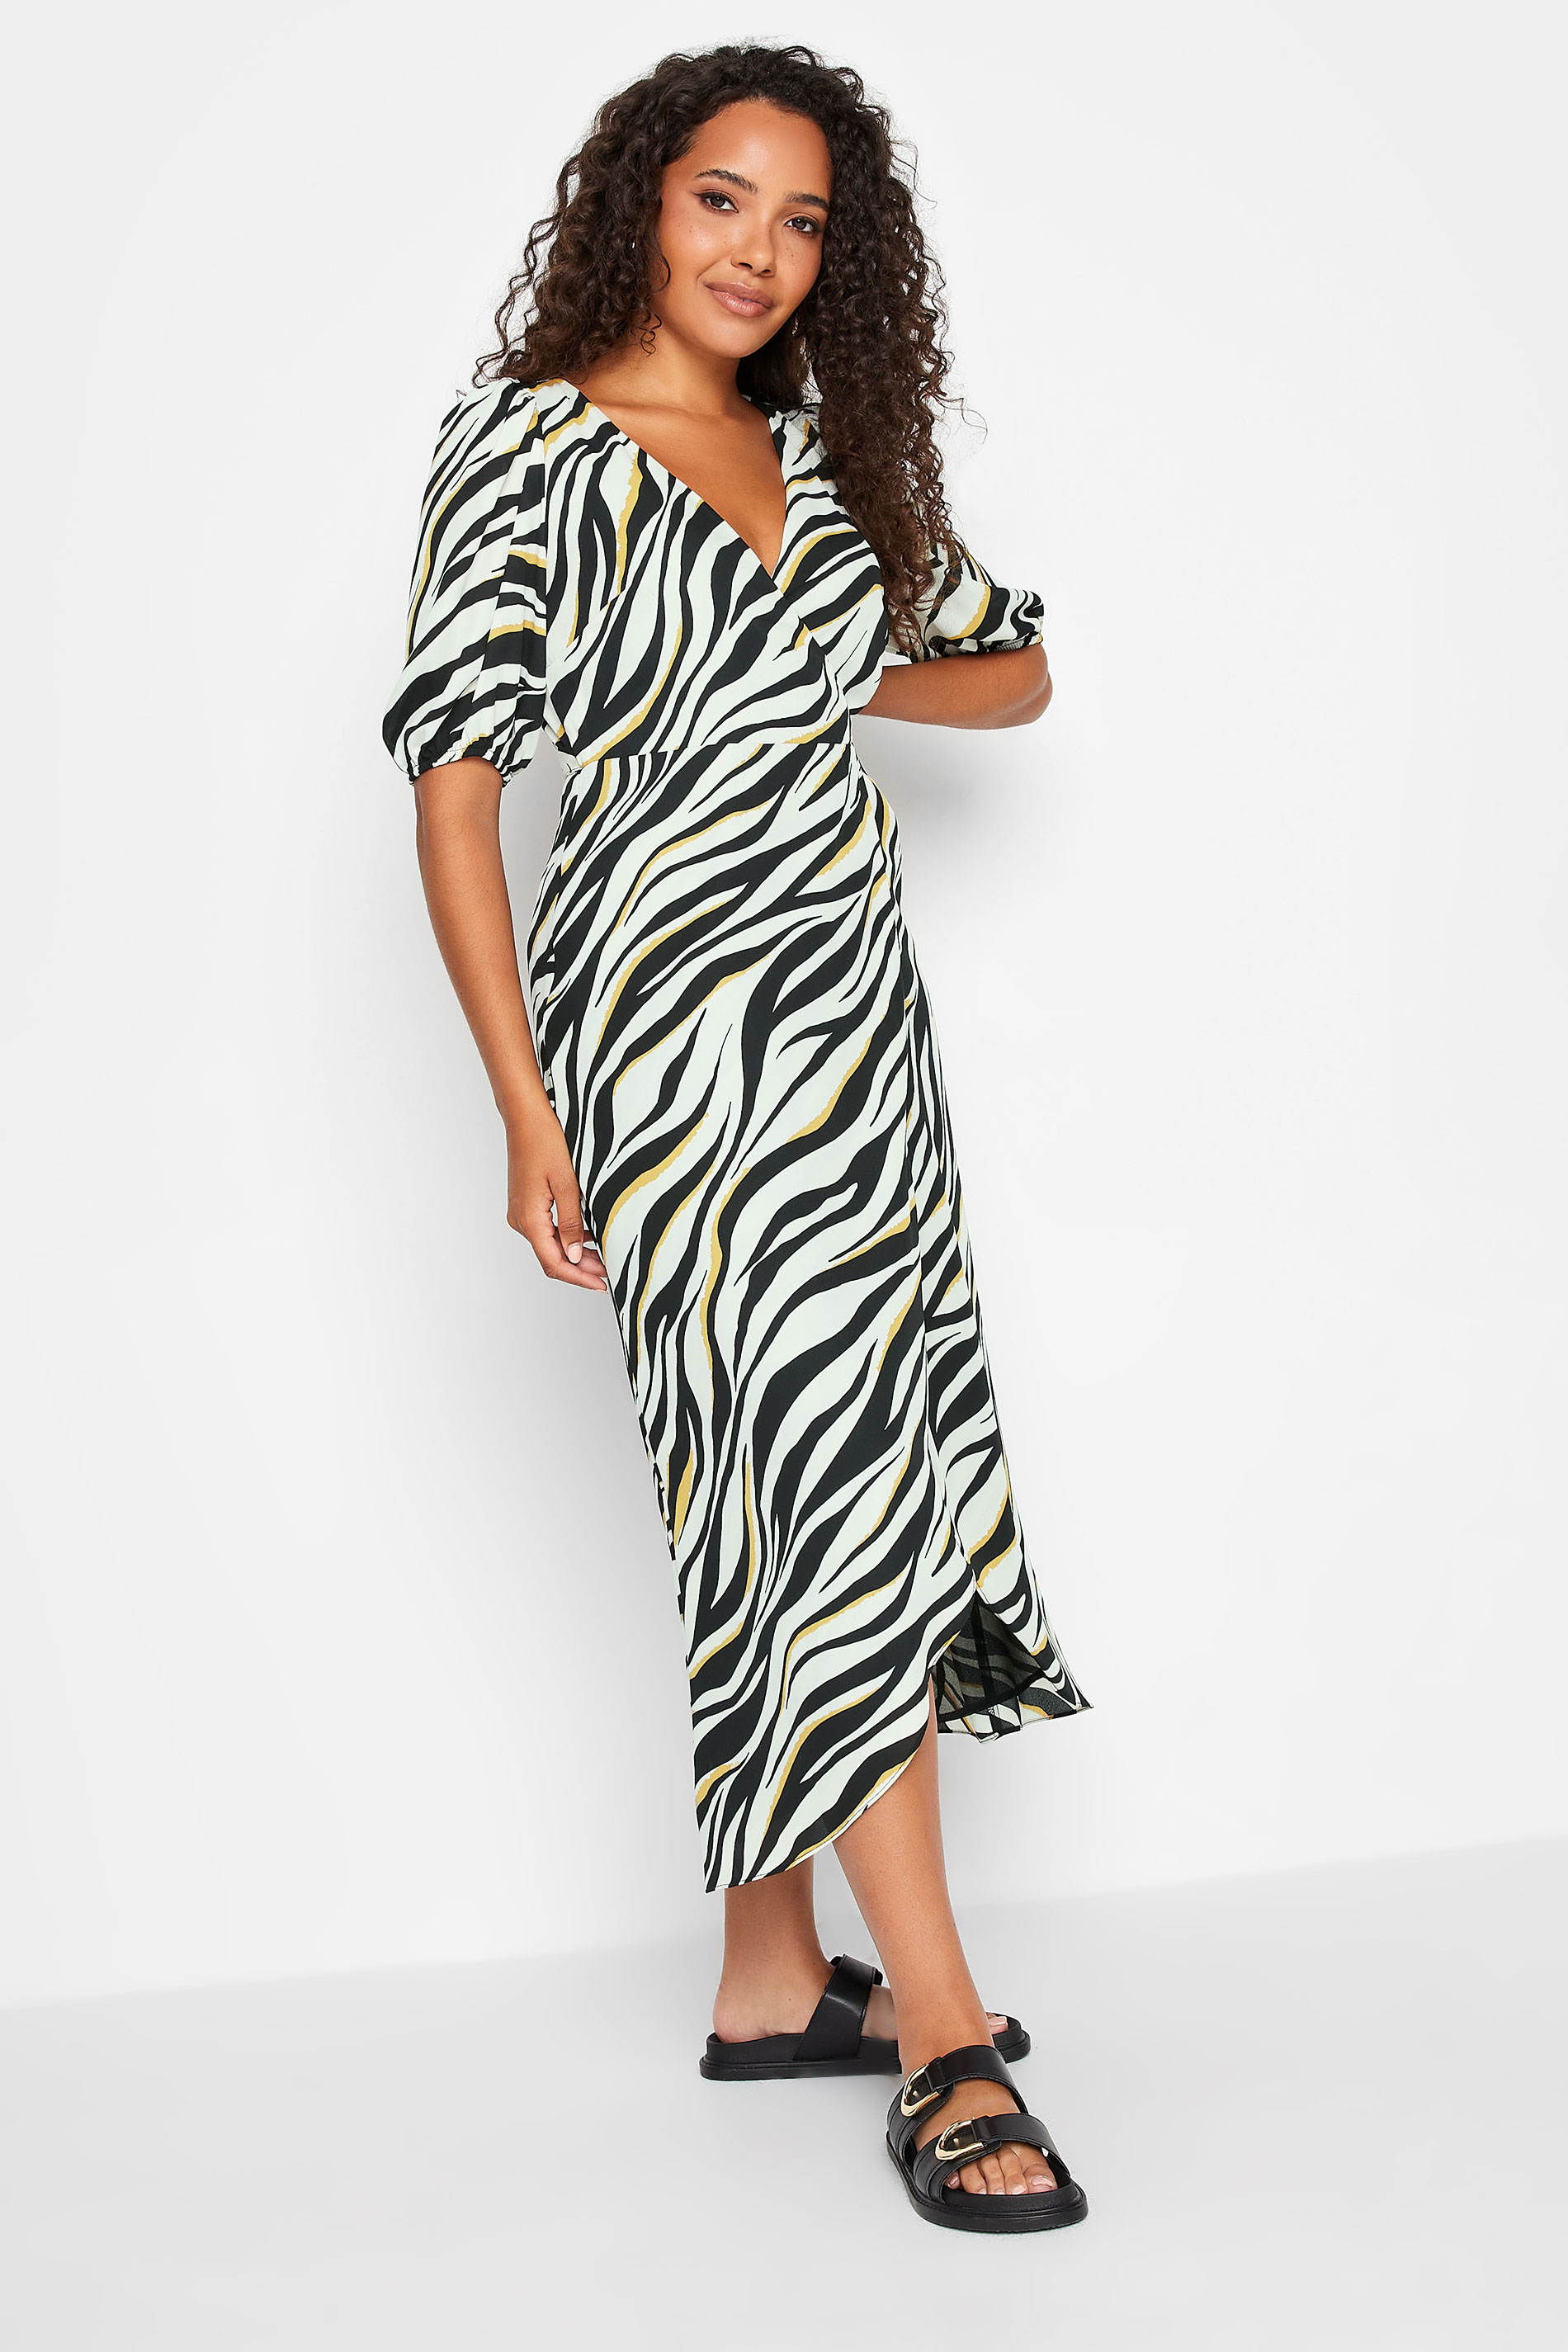 M&Co Black Zebra Print Wrap Dress | M&Co 1